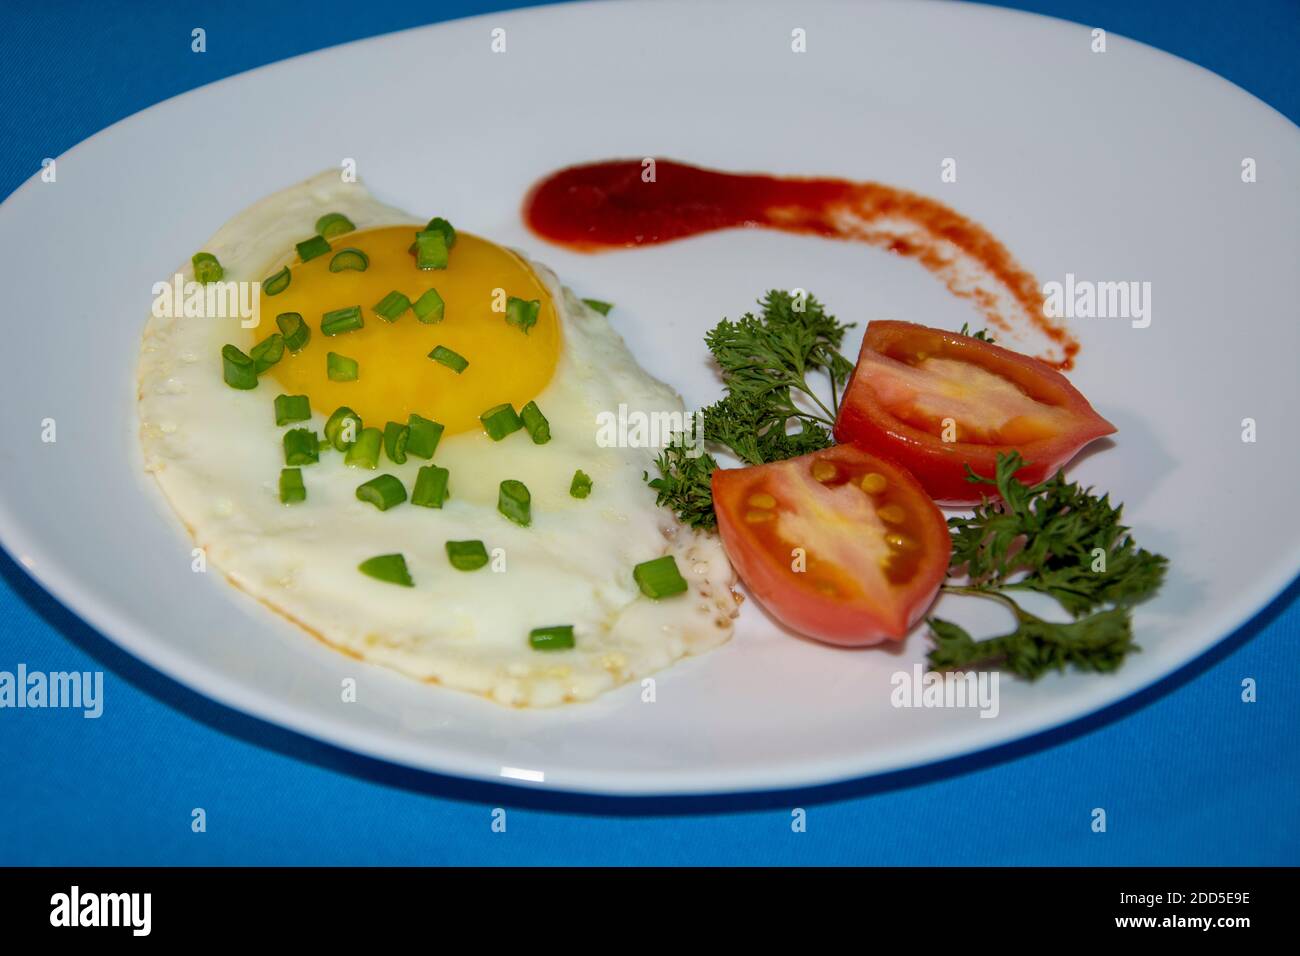 Un plat d'œufs frits. Œufs frits sur une assiette blanche avec tomates, herbes, ketchup. Petit déjeuner de baccalauréat. Banque D'Images